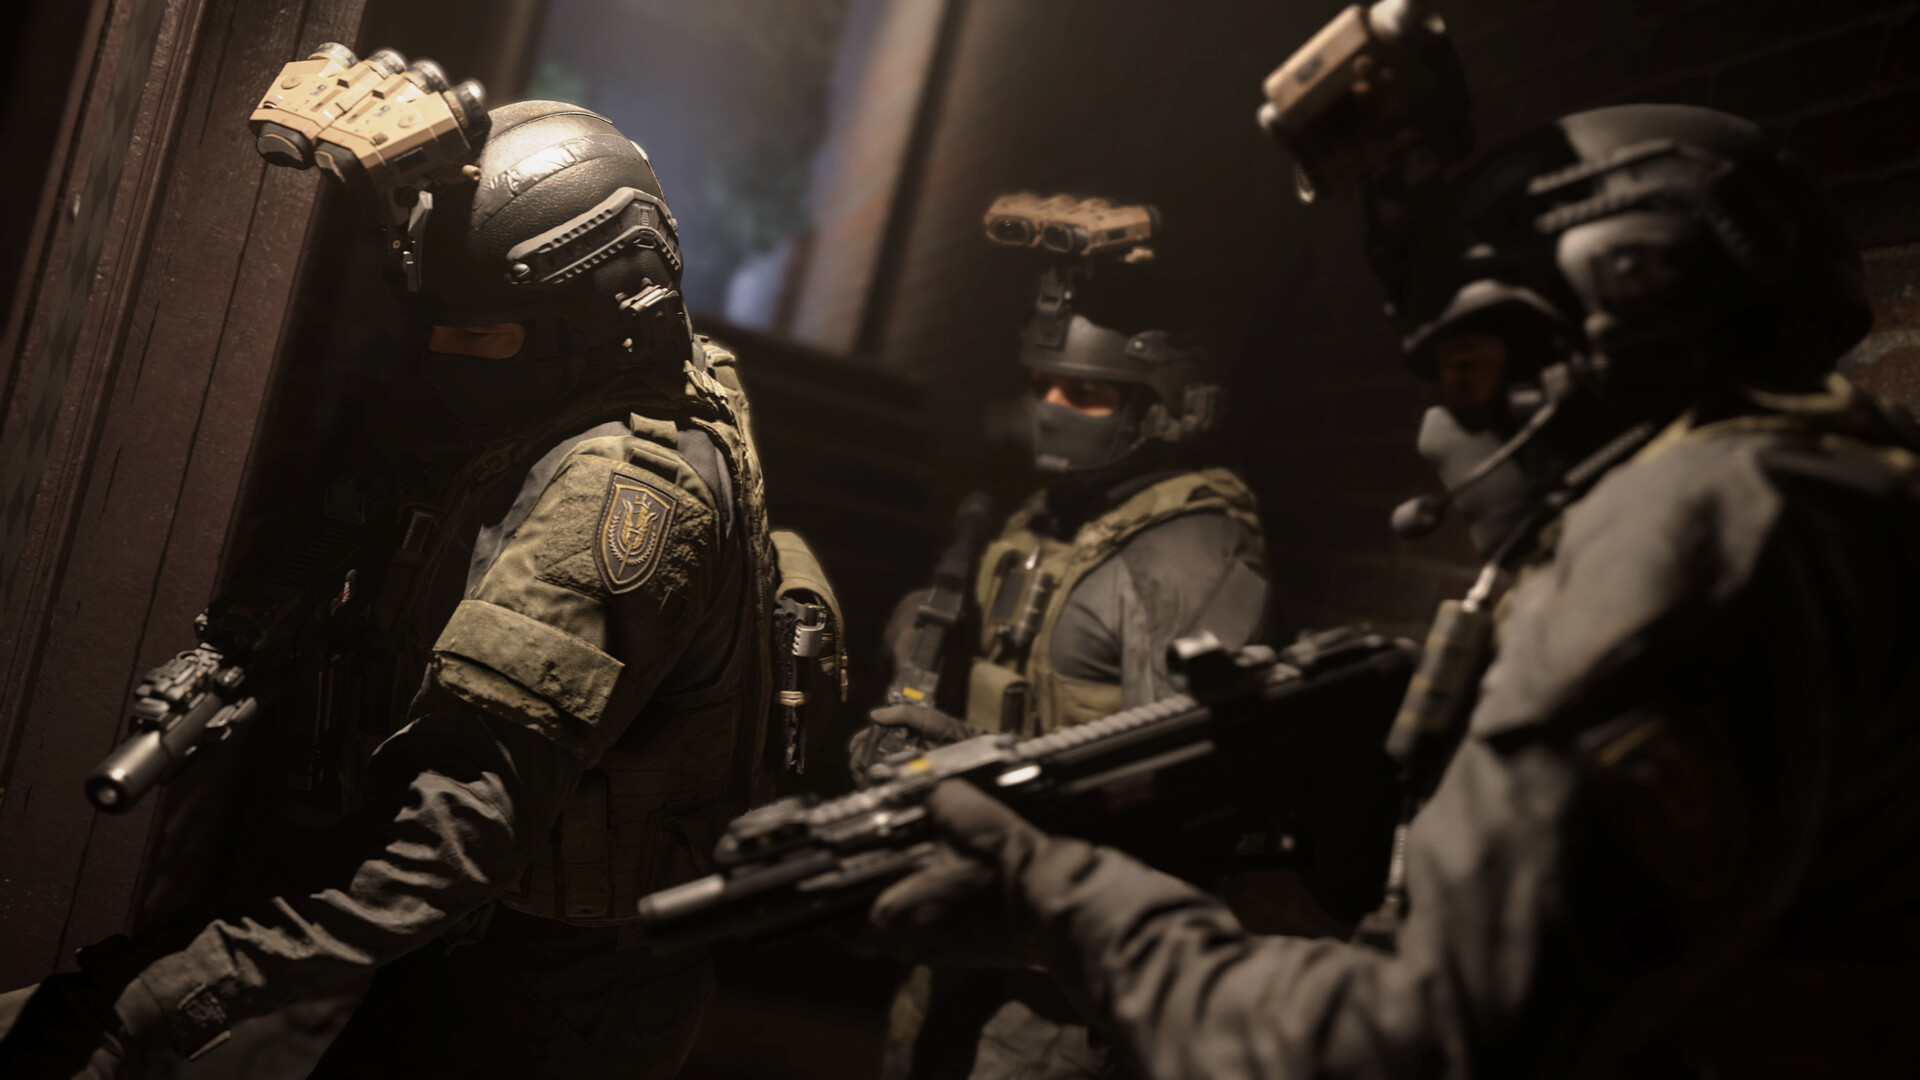 اکانت قانونی Call Of Duty Modern Warfare1 برای ps4 و PS5